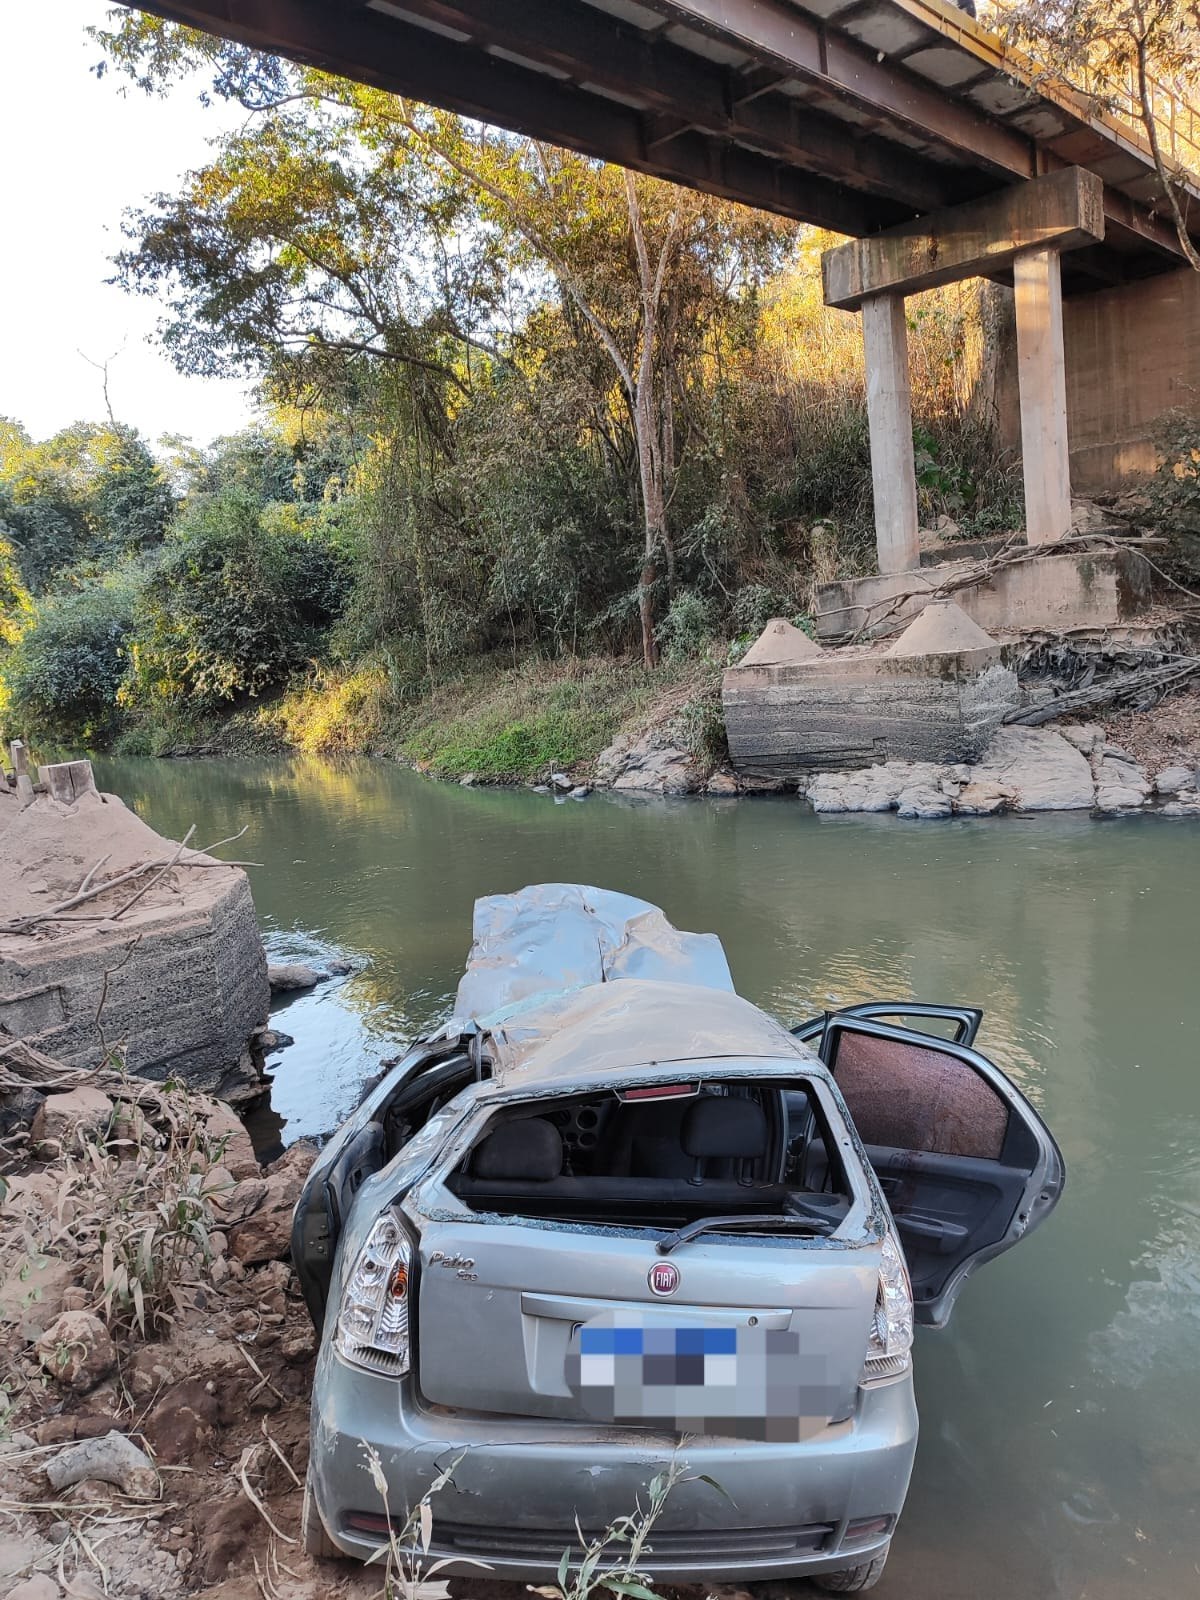 Mulher morre após carro cair de ponte em estrada de Igaratinga - Foto: Divulgação/Corpo de Bombeiros